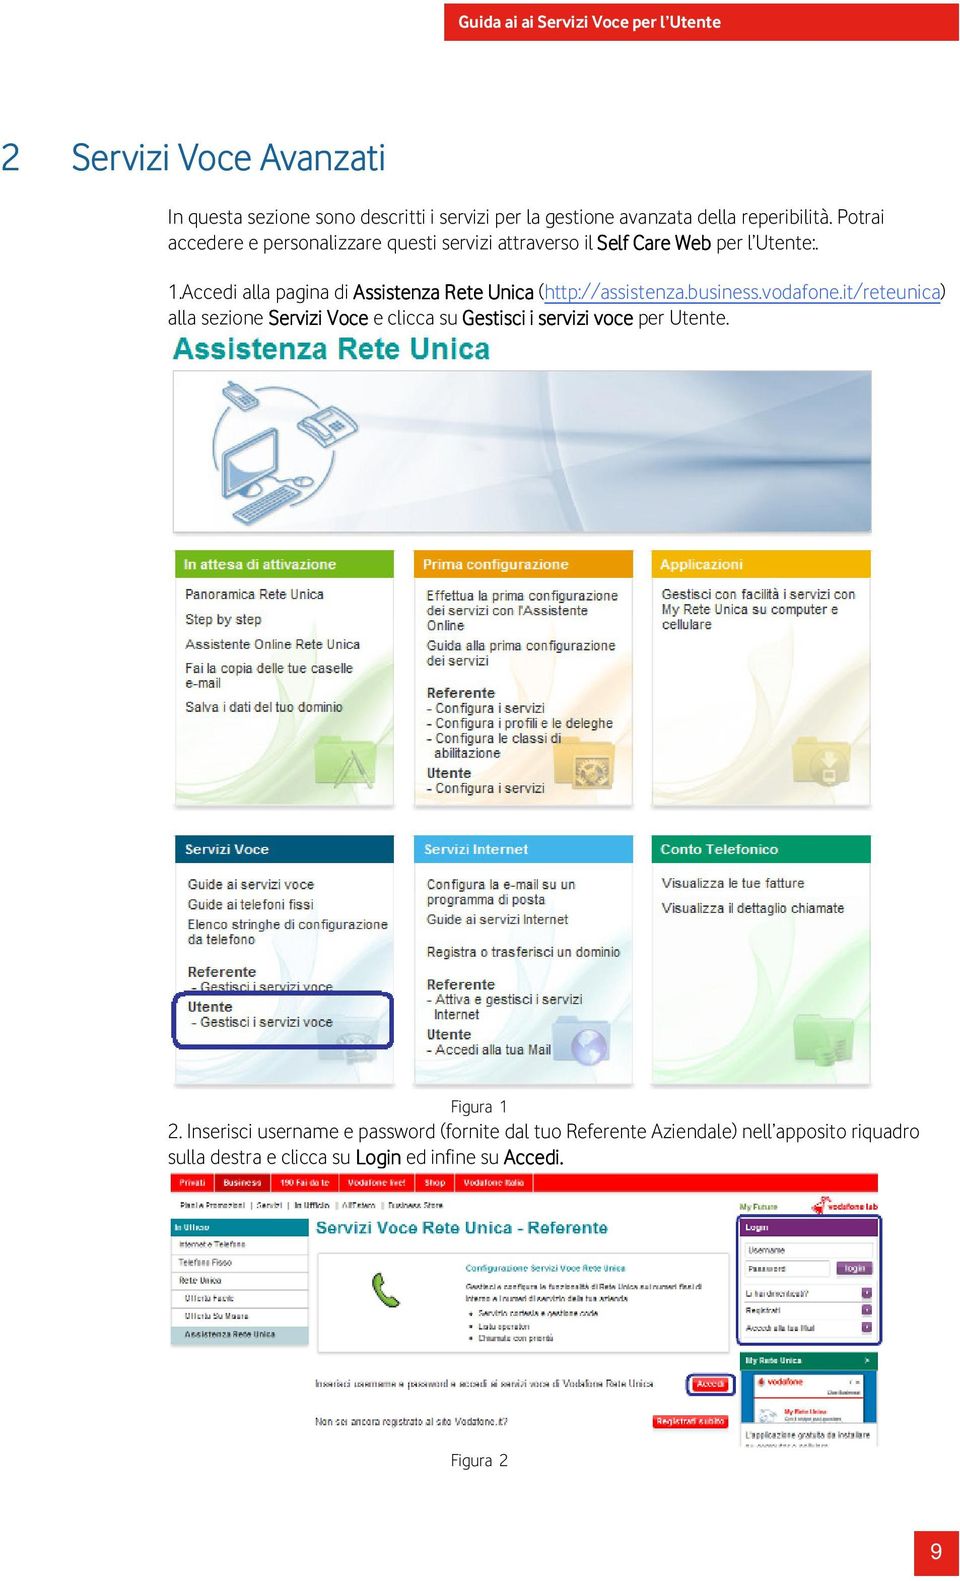 Accedi alla pagina di Assistenza Rete Unica (http://assistenza.business.vodafone.